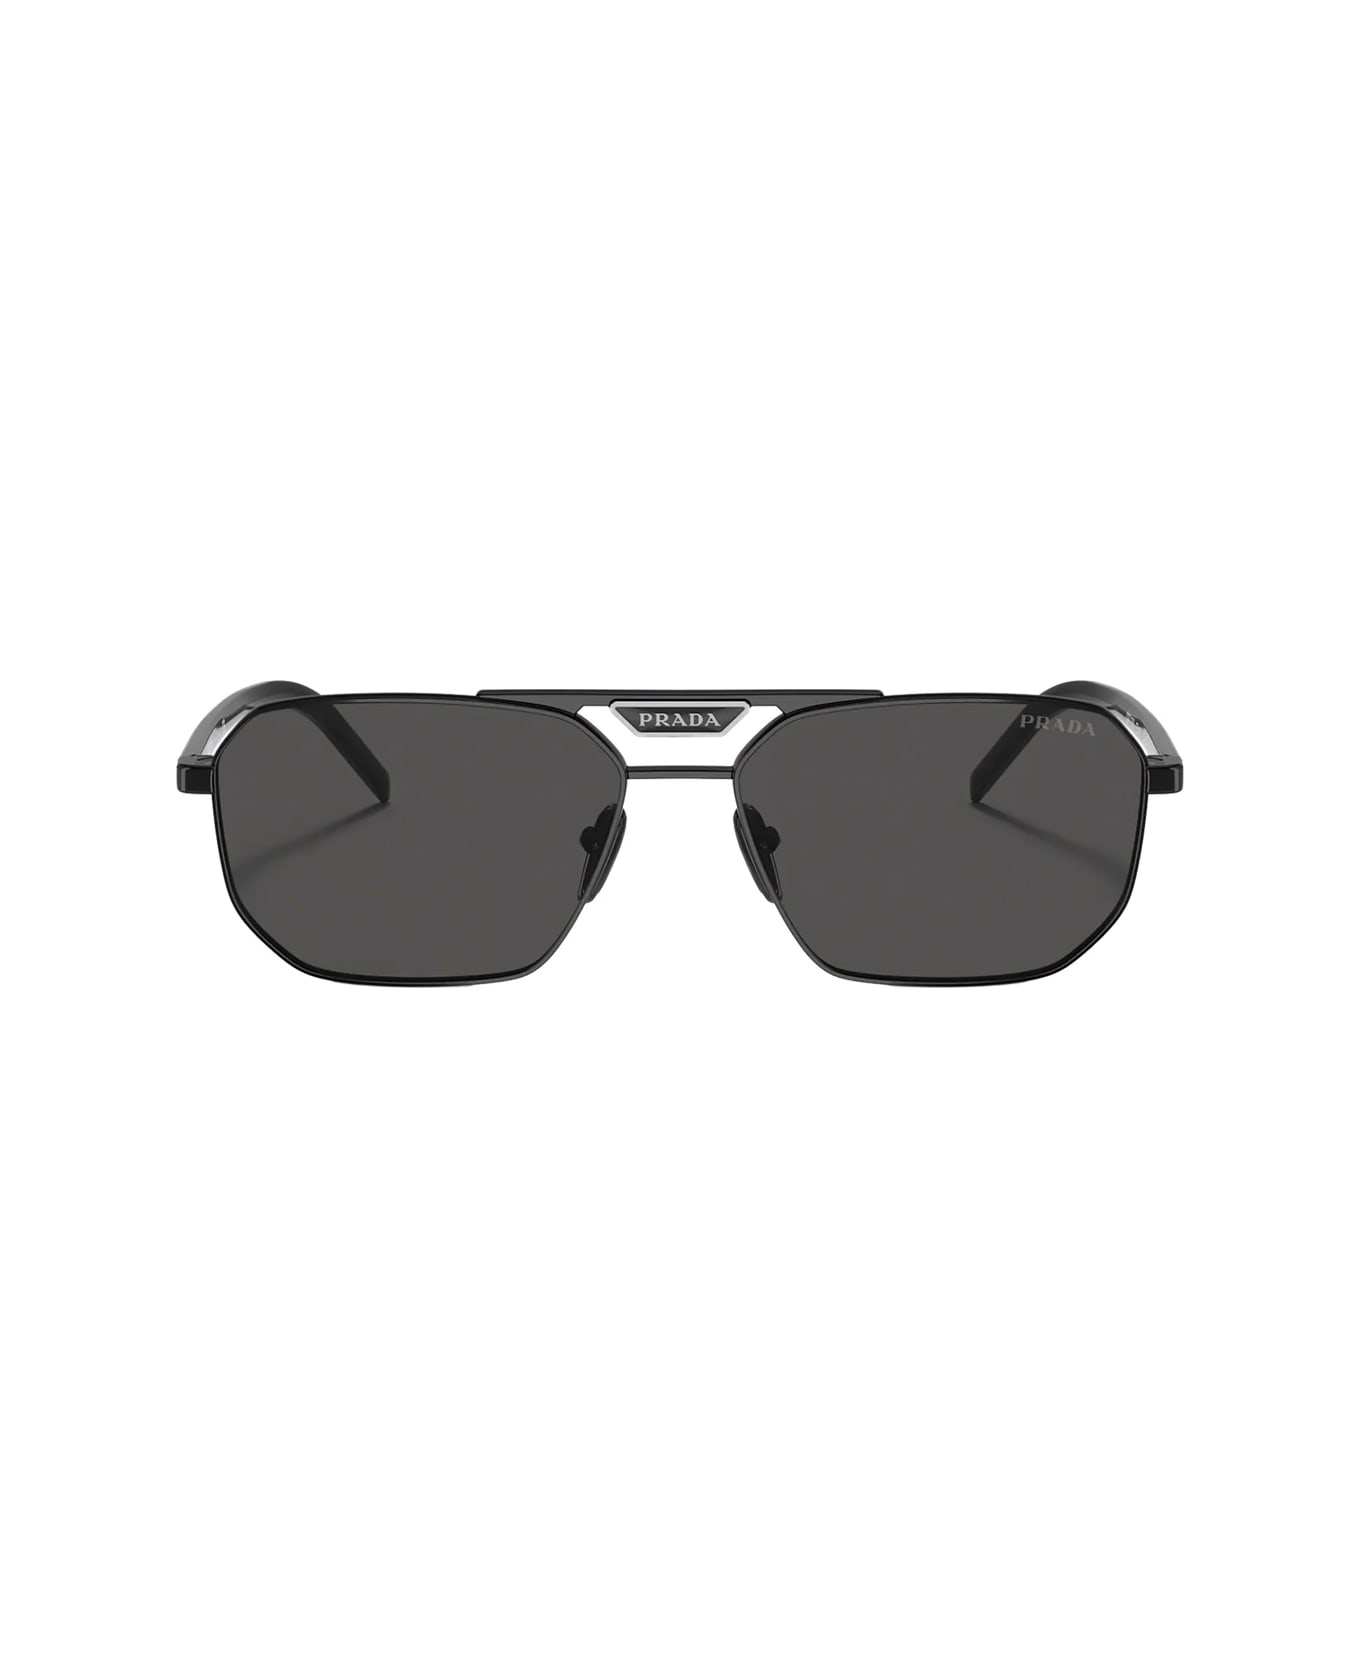 Prada Eyewear Pr 58ys 1ab5s0 Sunglasses - Nero